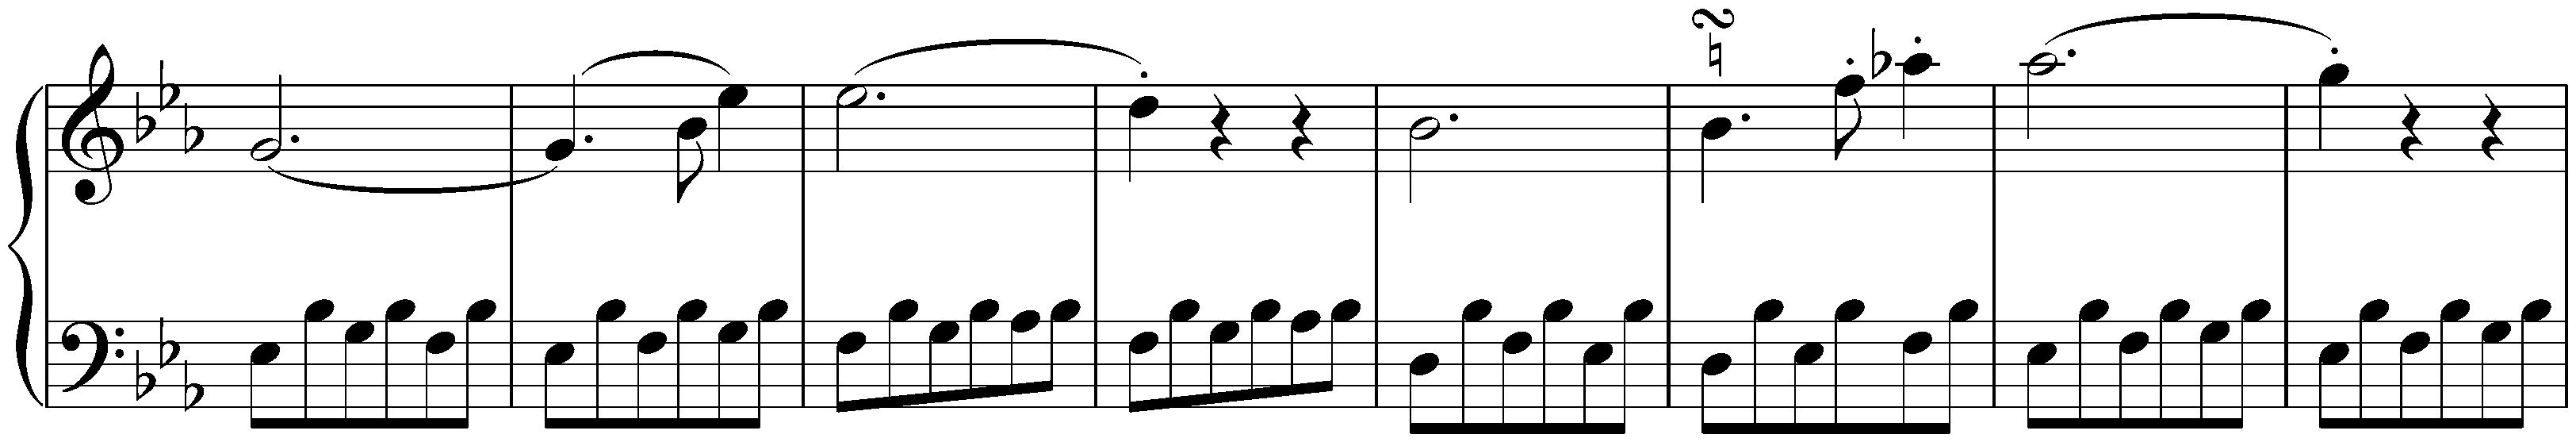 Sonata no. 5 in C minor, op. 10 no. 1; 1. Allegro molto e con brio